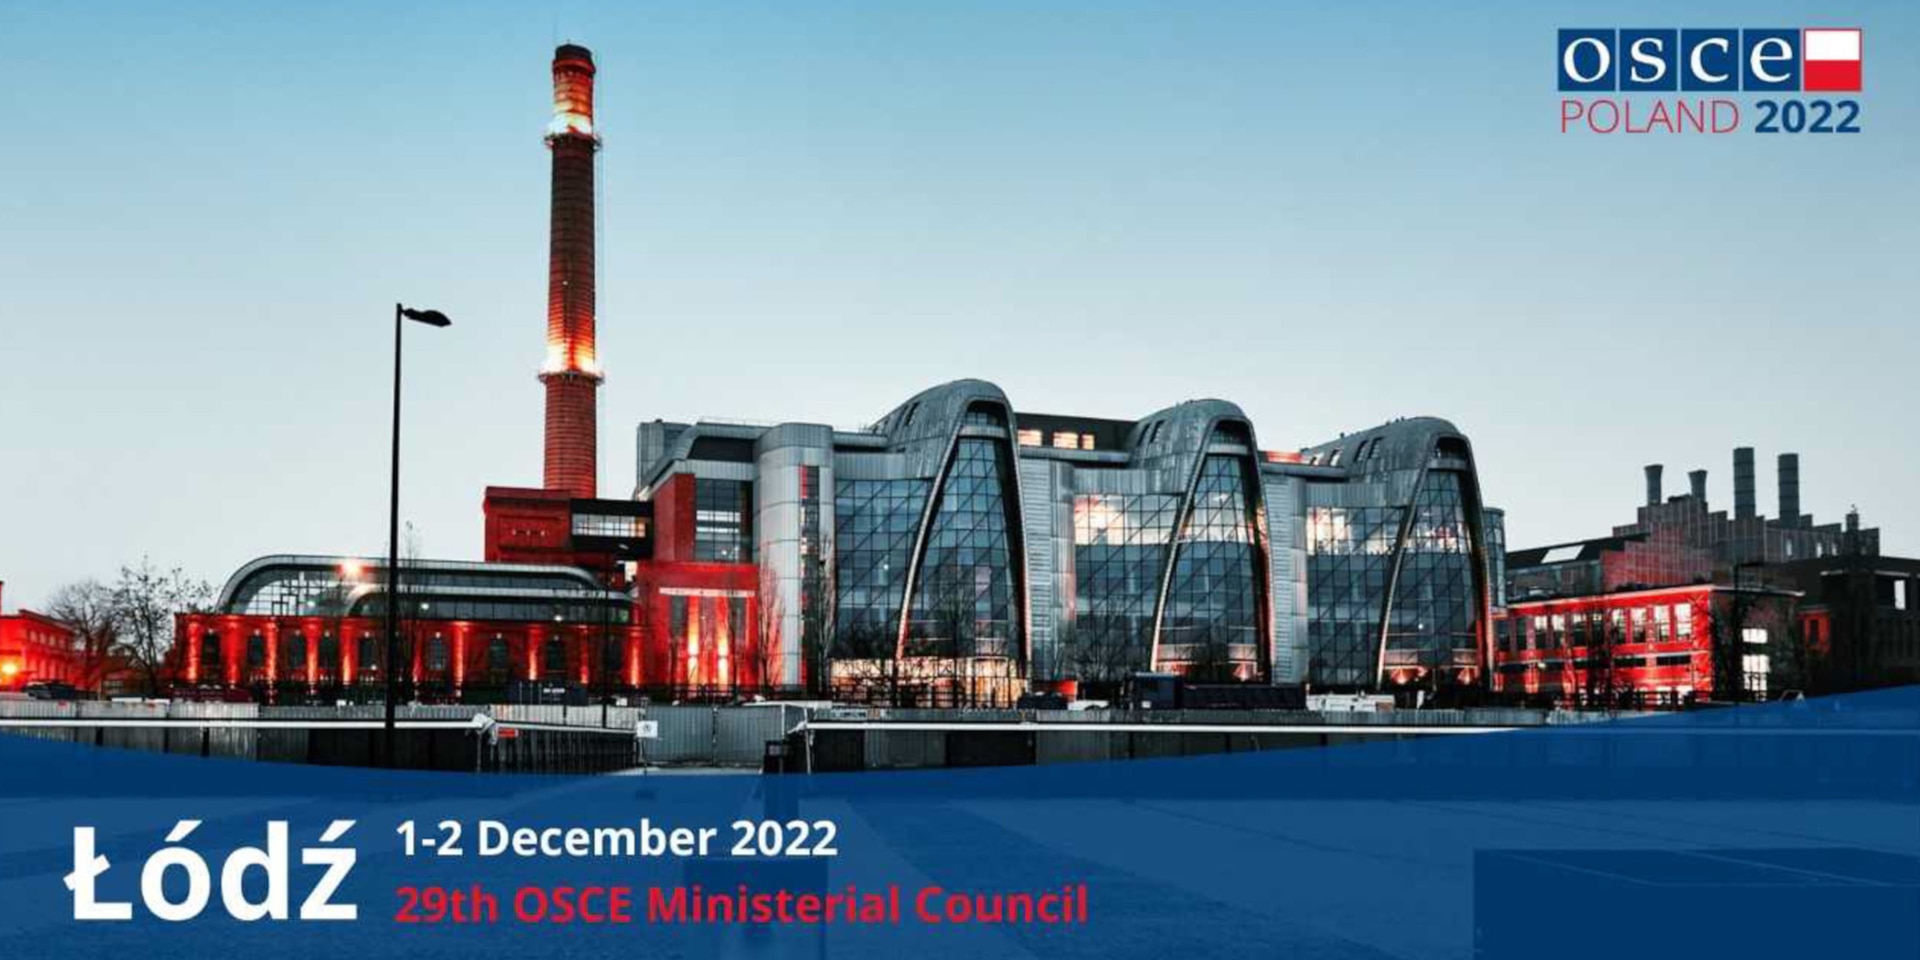 Un grand bâtiment industriel utilisé aujourd'hui comme lieu de conférence. En haut à droite se trouve le logo de la présidence de l'OSCE par la Pologne en 2022.